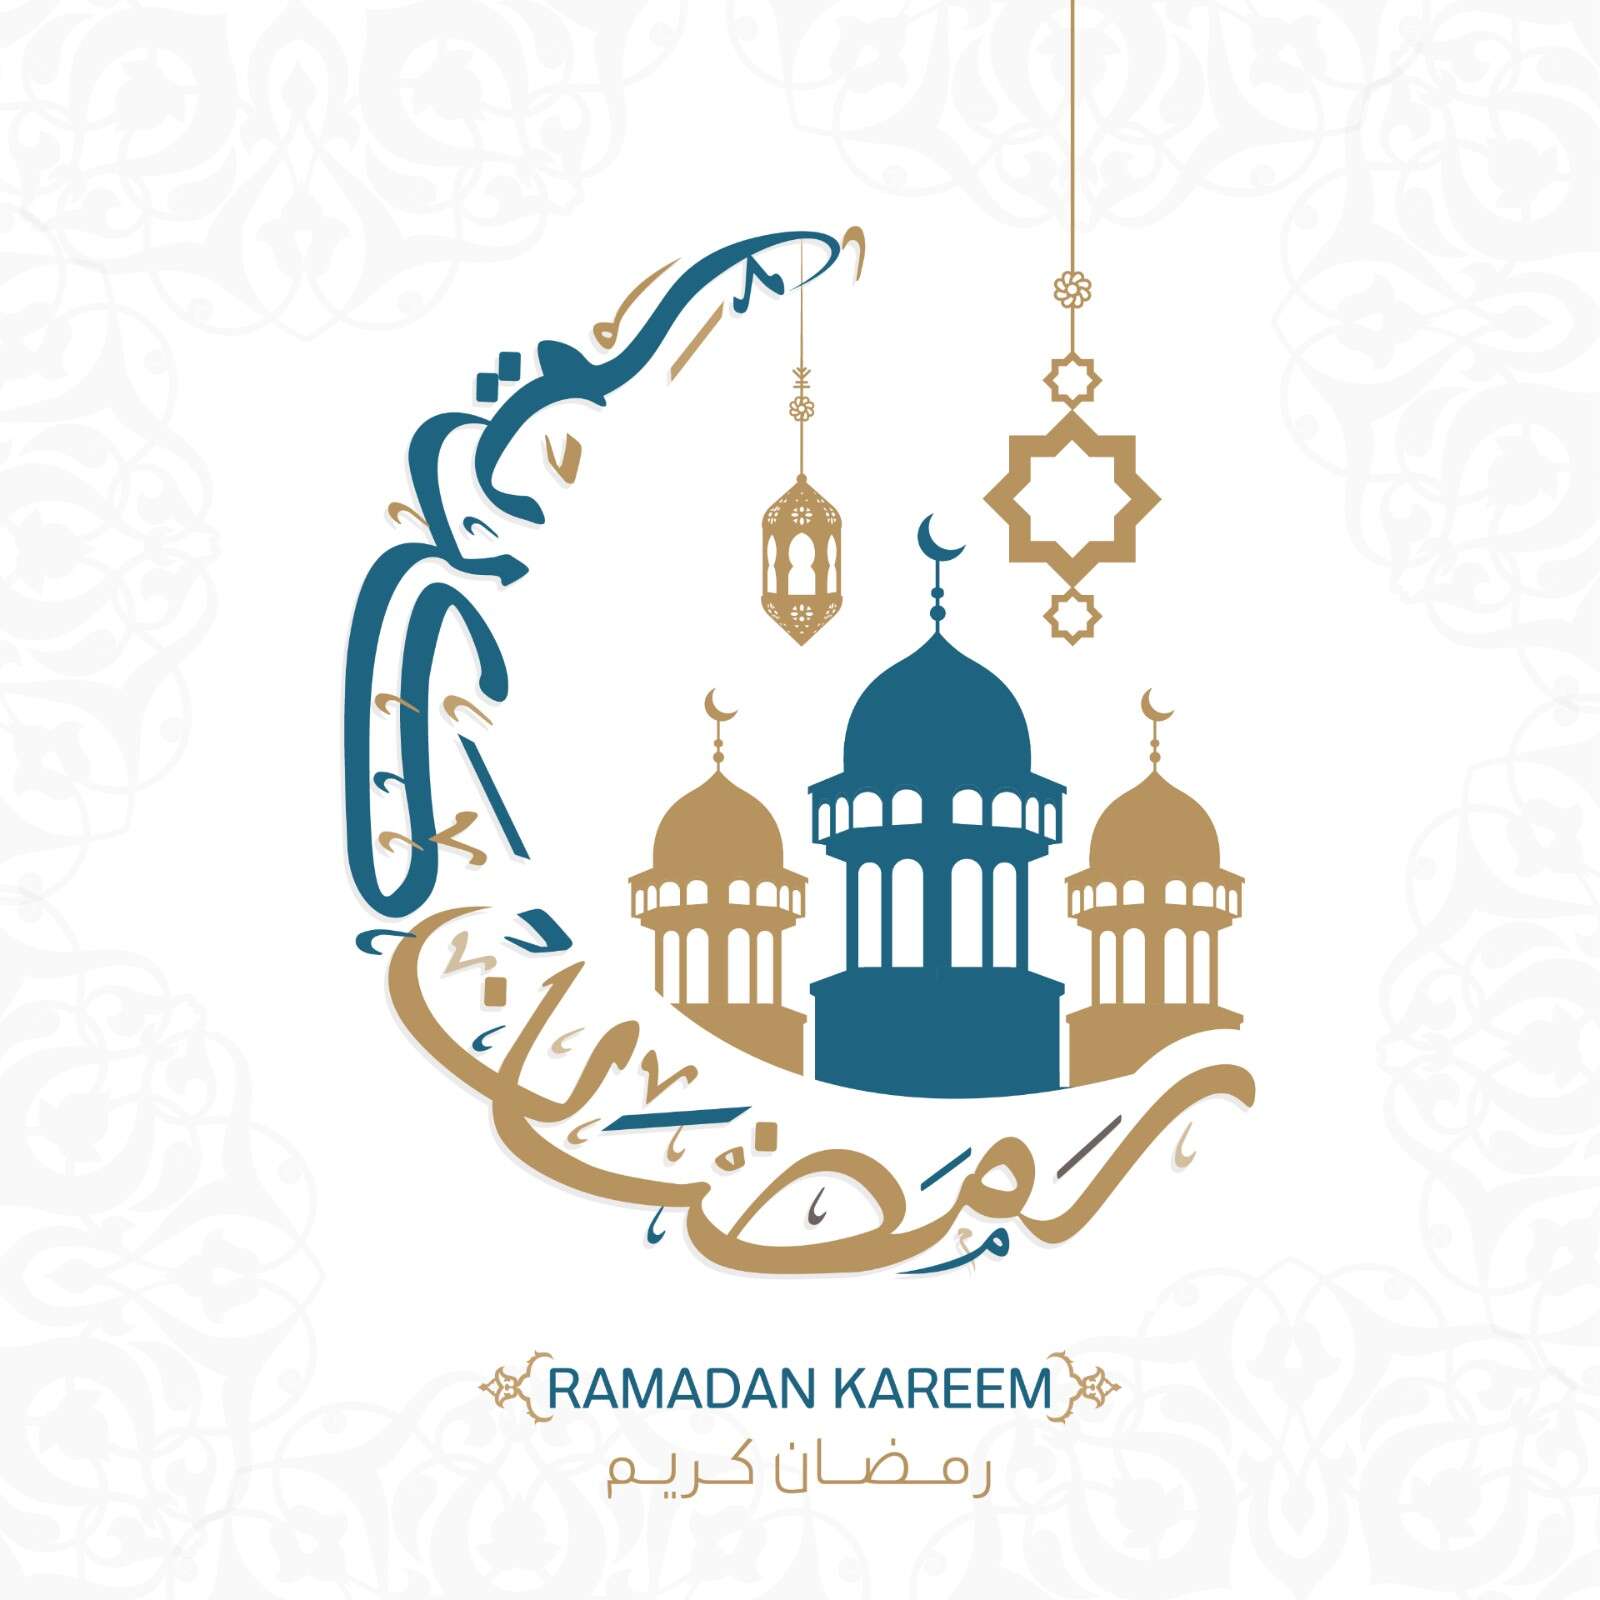 امساكية رمضان 2022 مكة المكرمة